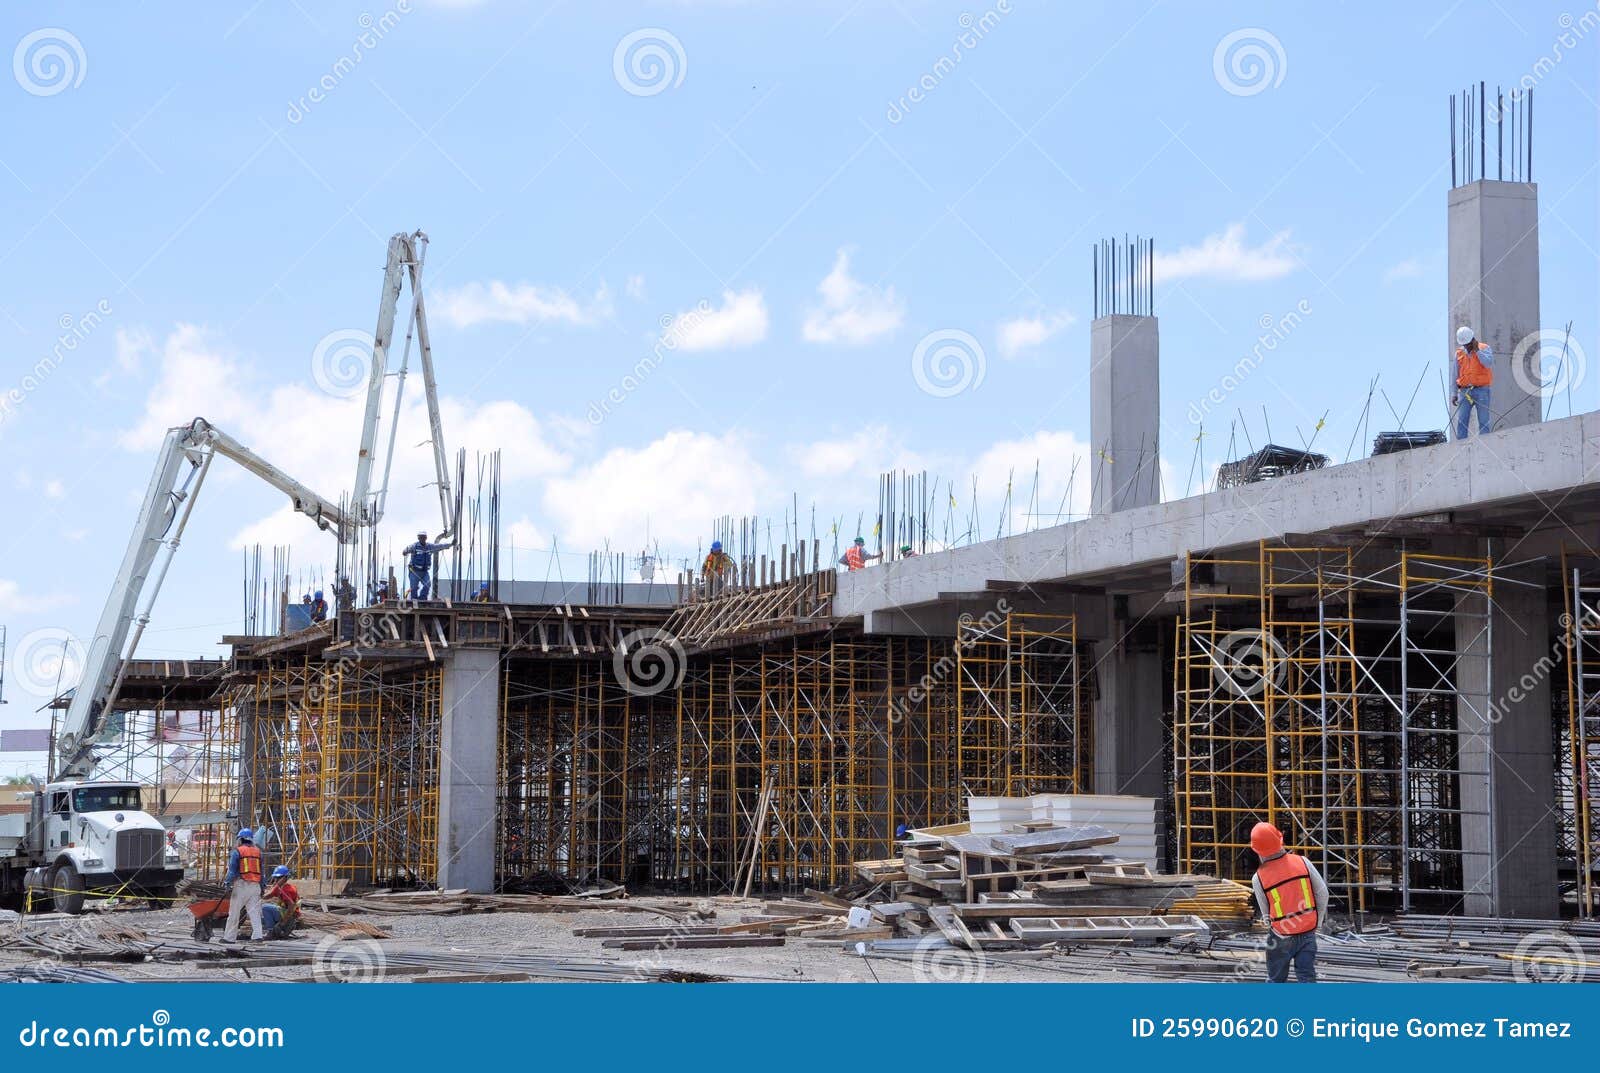 concrete construction